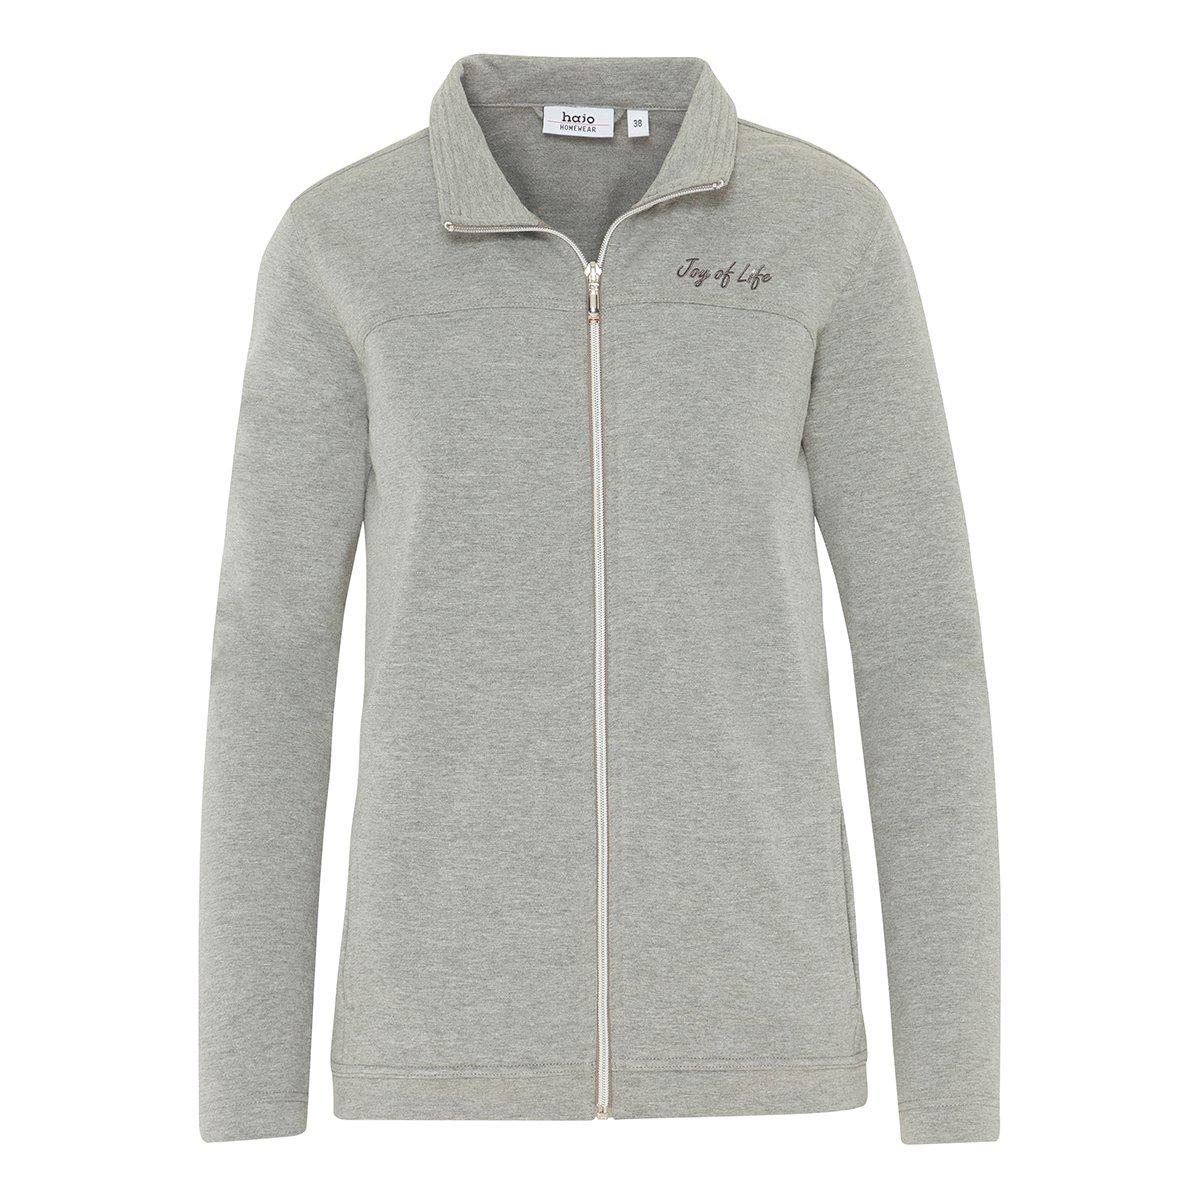 Klima-komfort - Freizeit Homewear Jacke Damen Grau 4XL von hajo